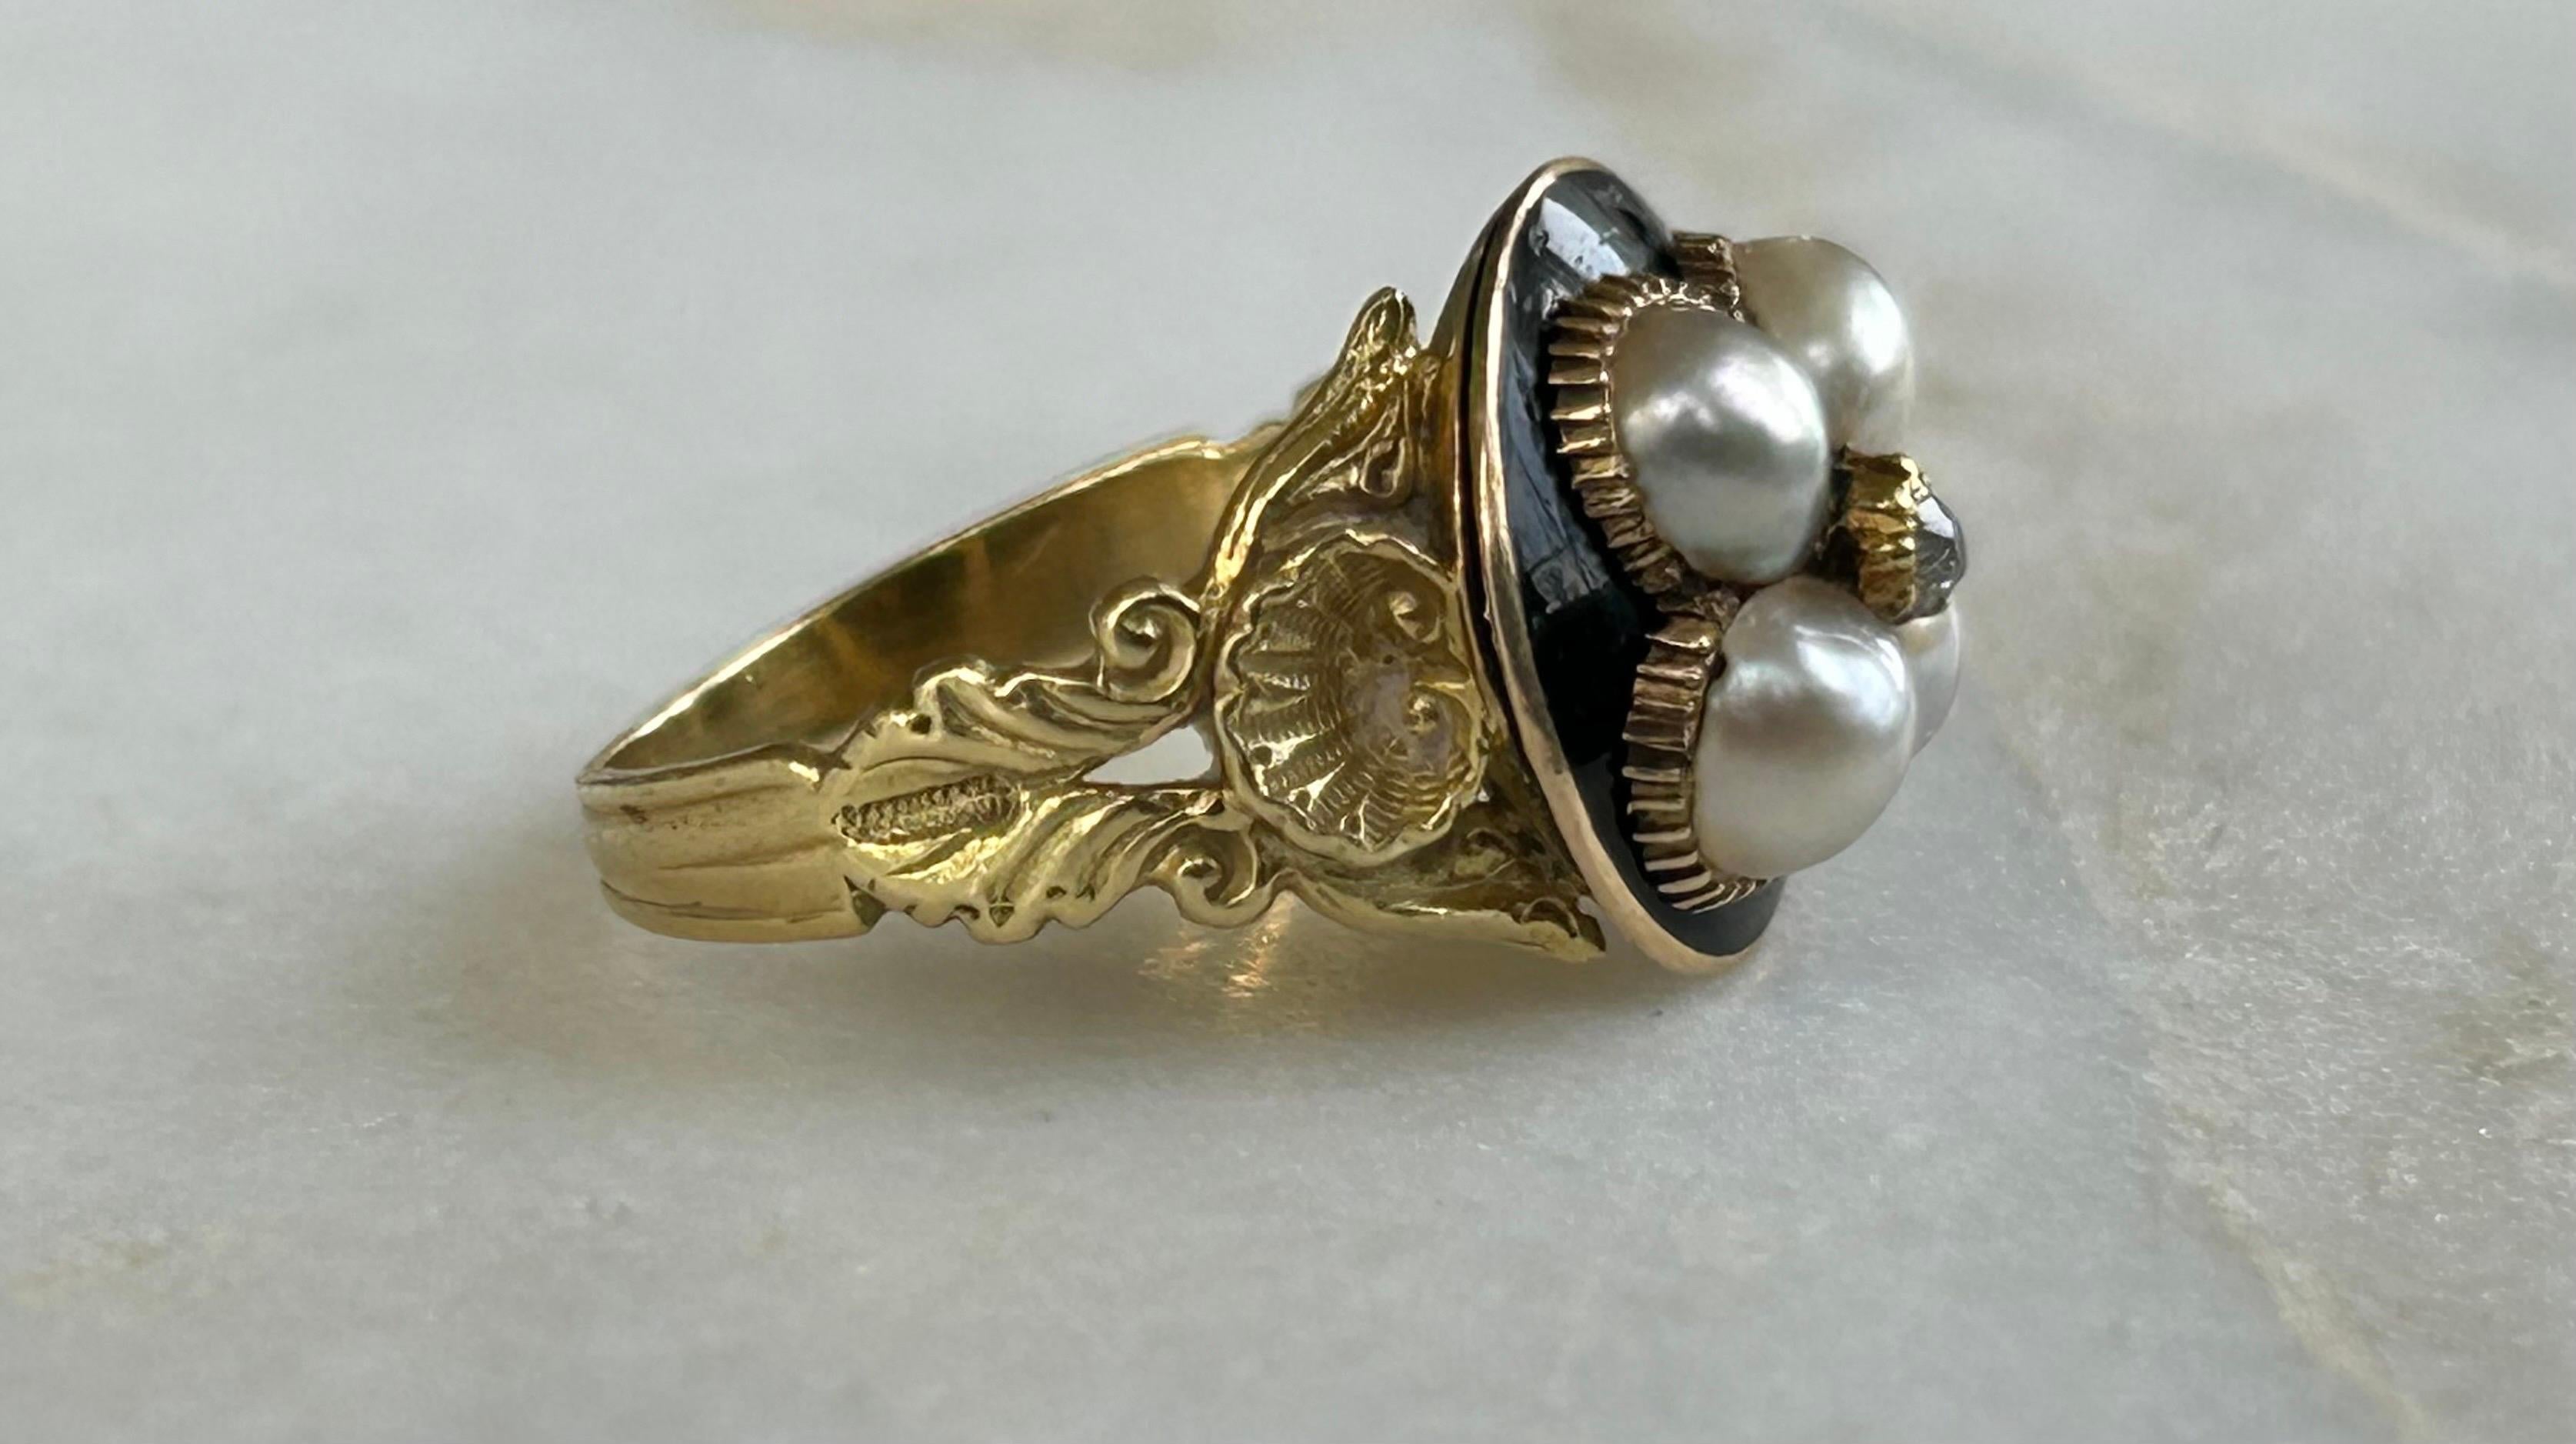 Eine schöne späten georgischen natürlichen Perle und Emaille gesetzt Trauer Ring, 18ct Gelbgold.
Der verschnörkelte, einzigartige lange und schlanke Schaft ist mit einer großen Muschel und einem runden Plattenring versehen.
Die obere Platte ist mit